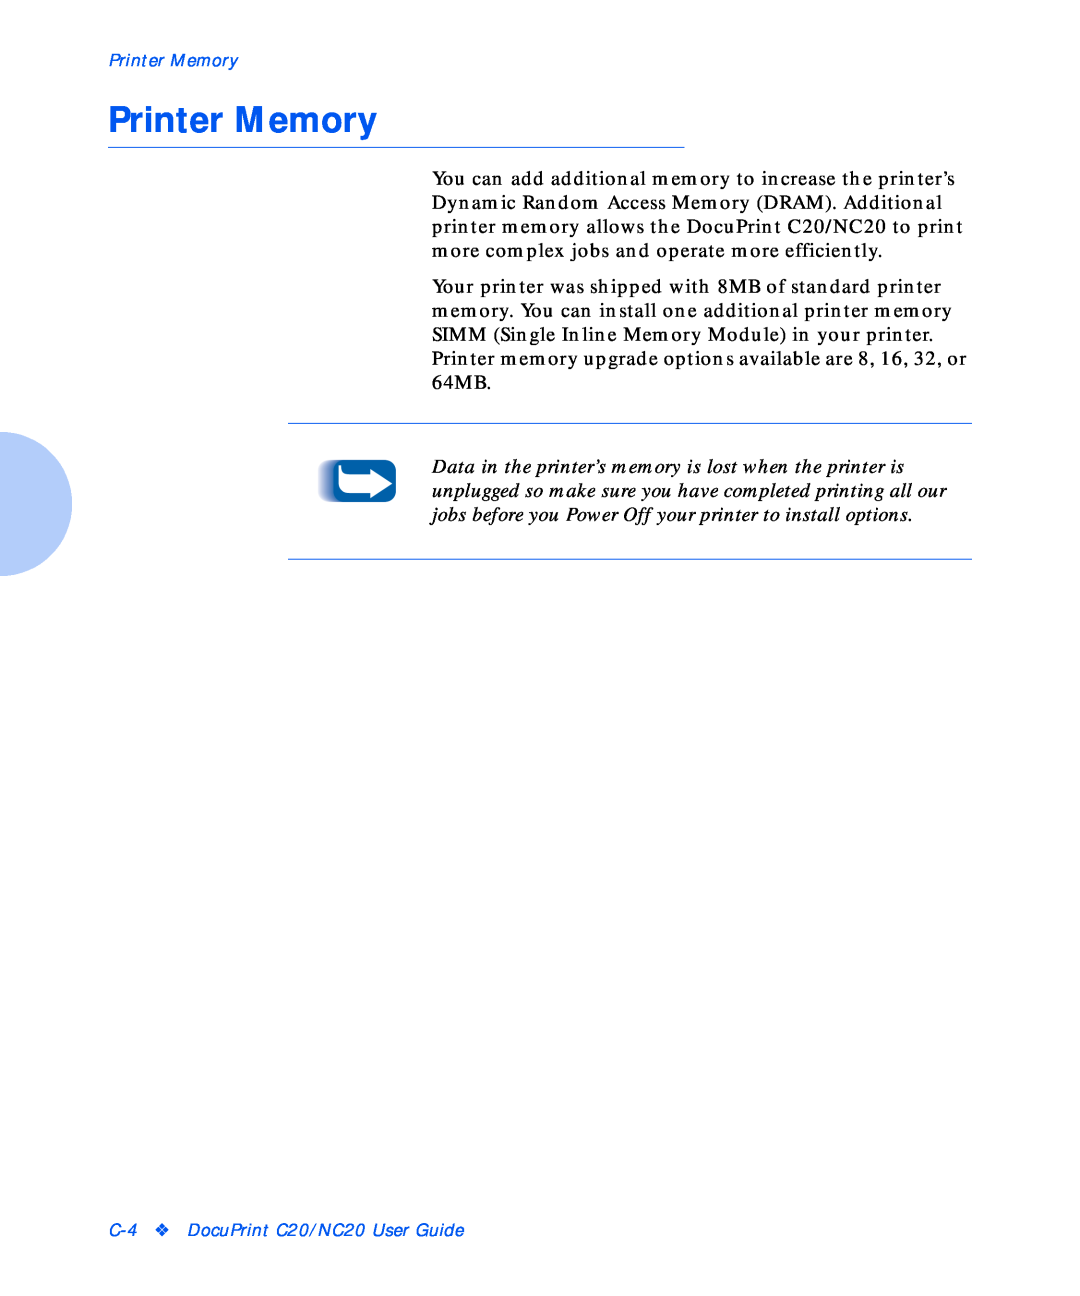 Xerox manual Printer Memory, C-4 DocuPrint C20/NC20 User Guide 